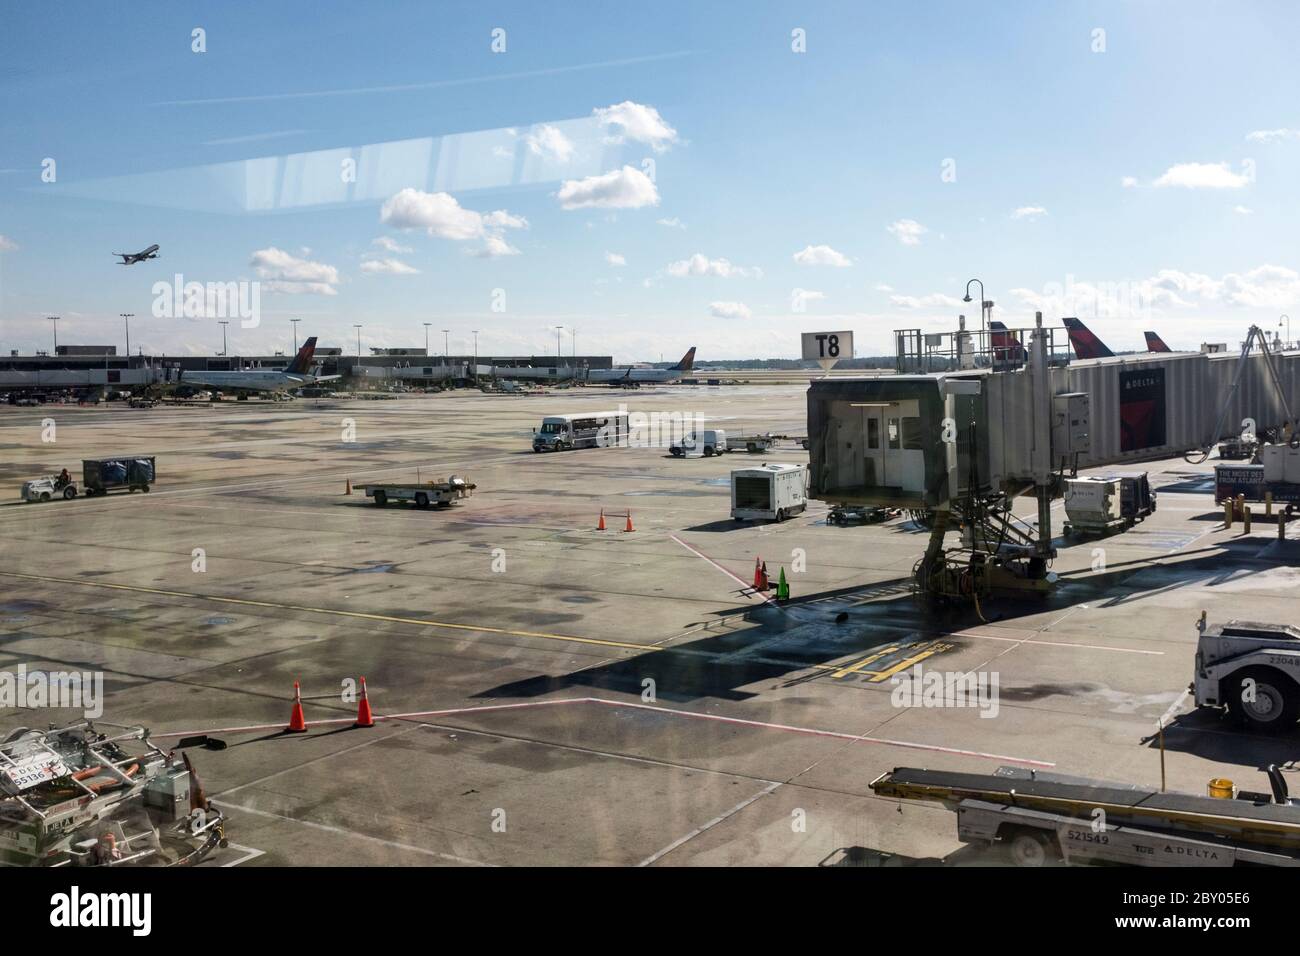 Vue par une fenêtre sur le tarmac de l'aéroport international Hartsfield-Jackson d'Atlanta lors d'une journée d'hiver. Banque D'Images